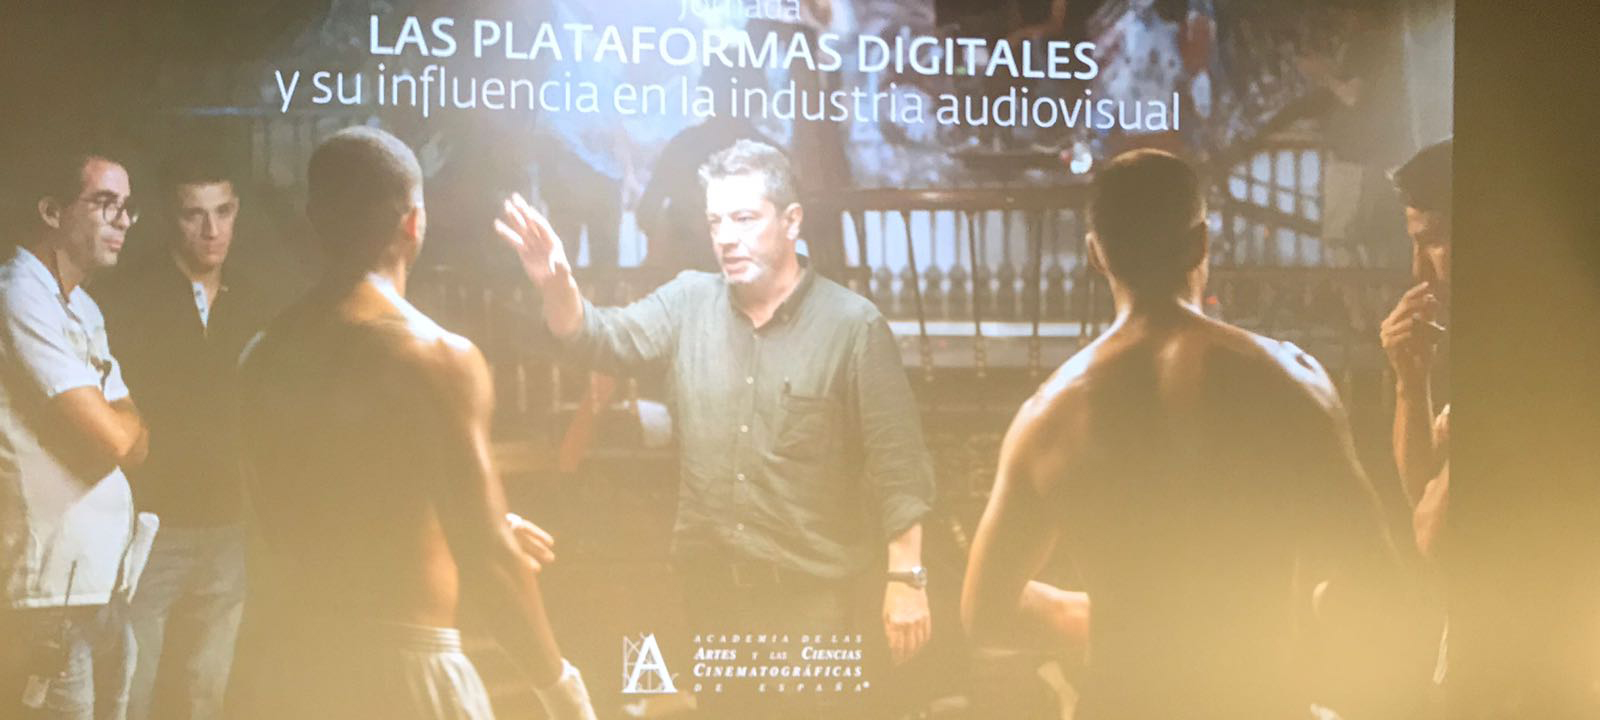 plataformas digitales academia cine